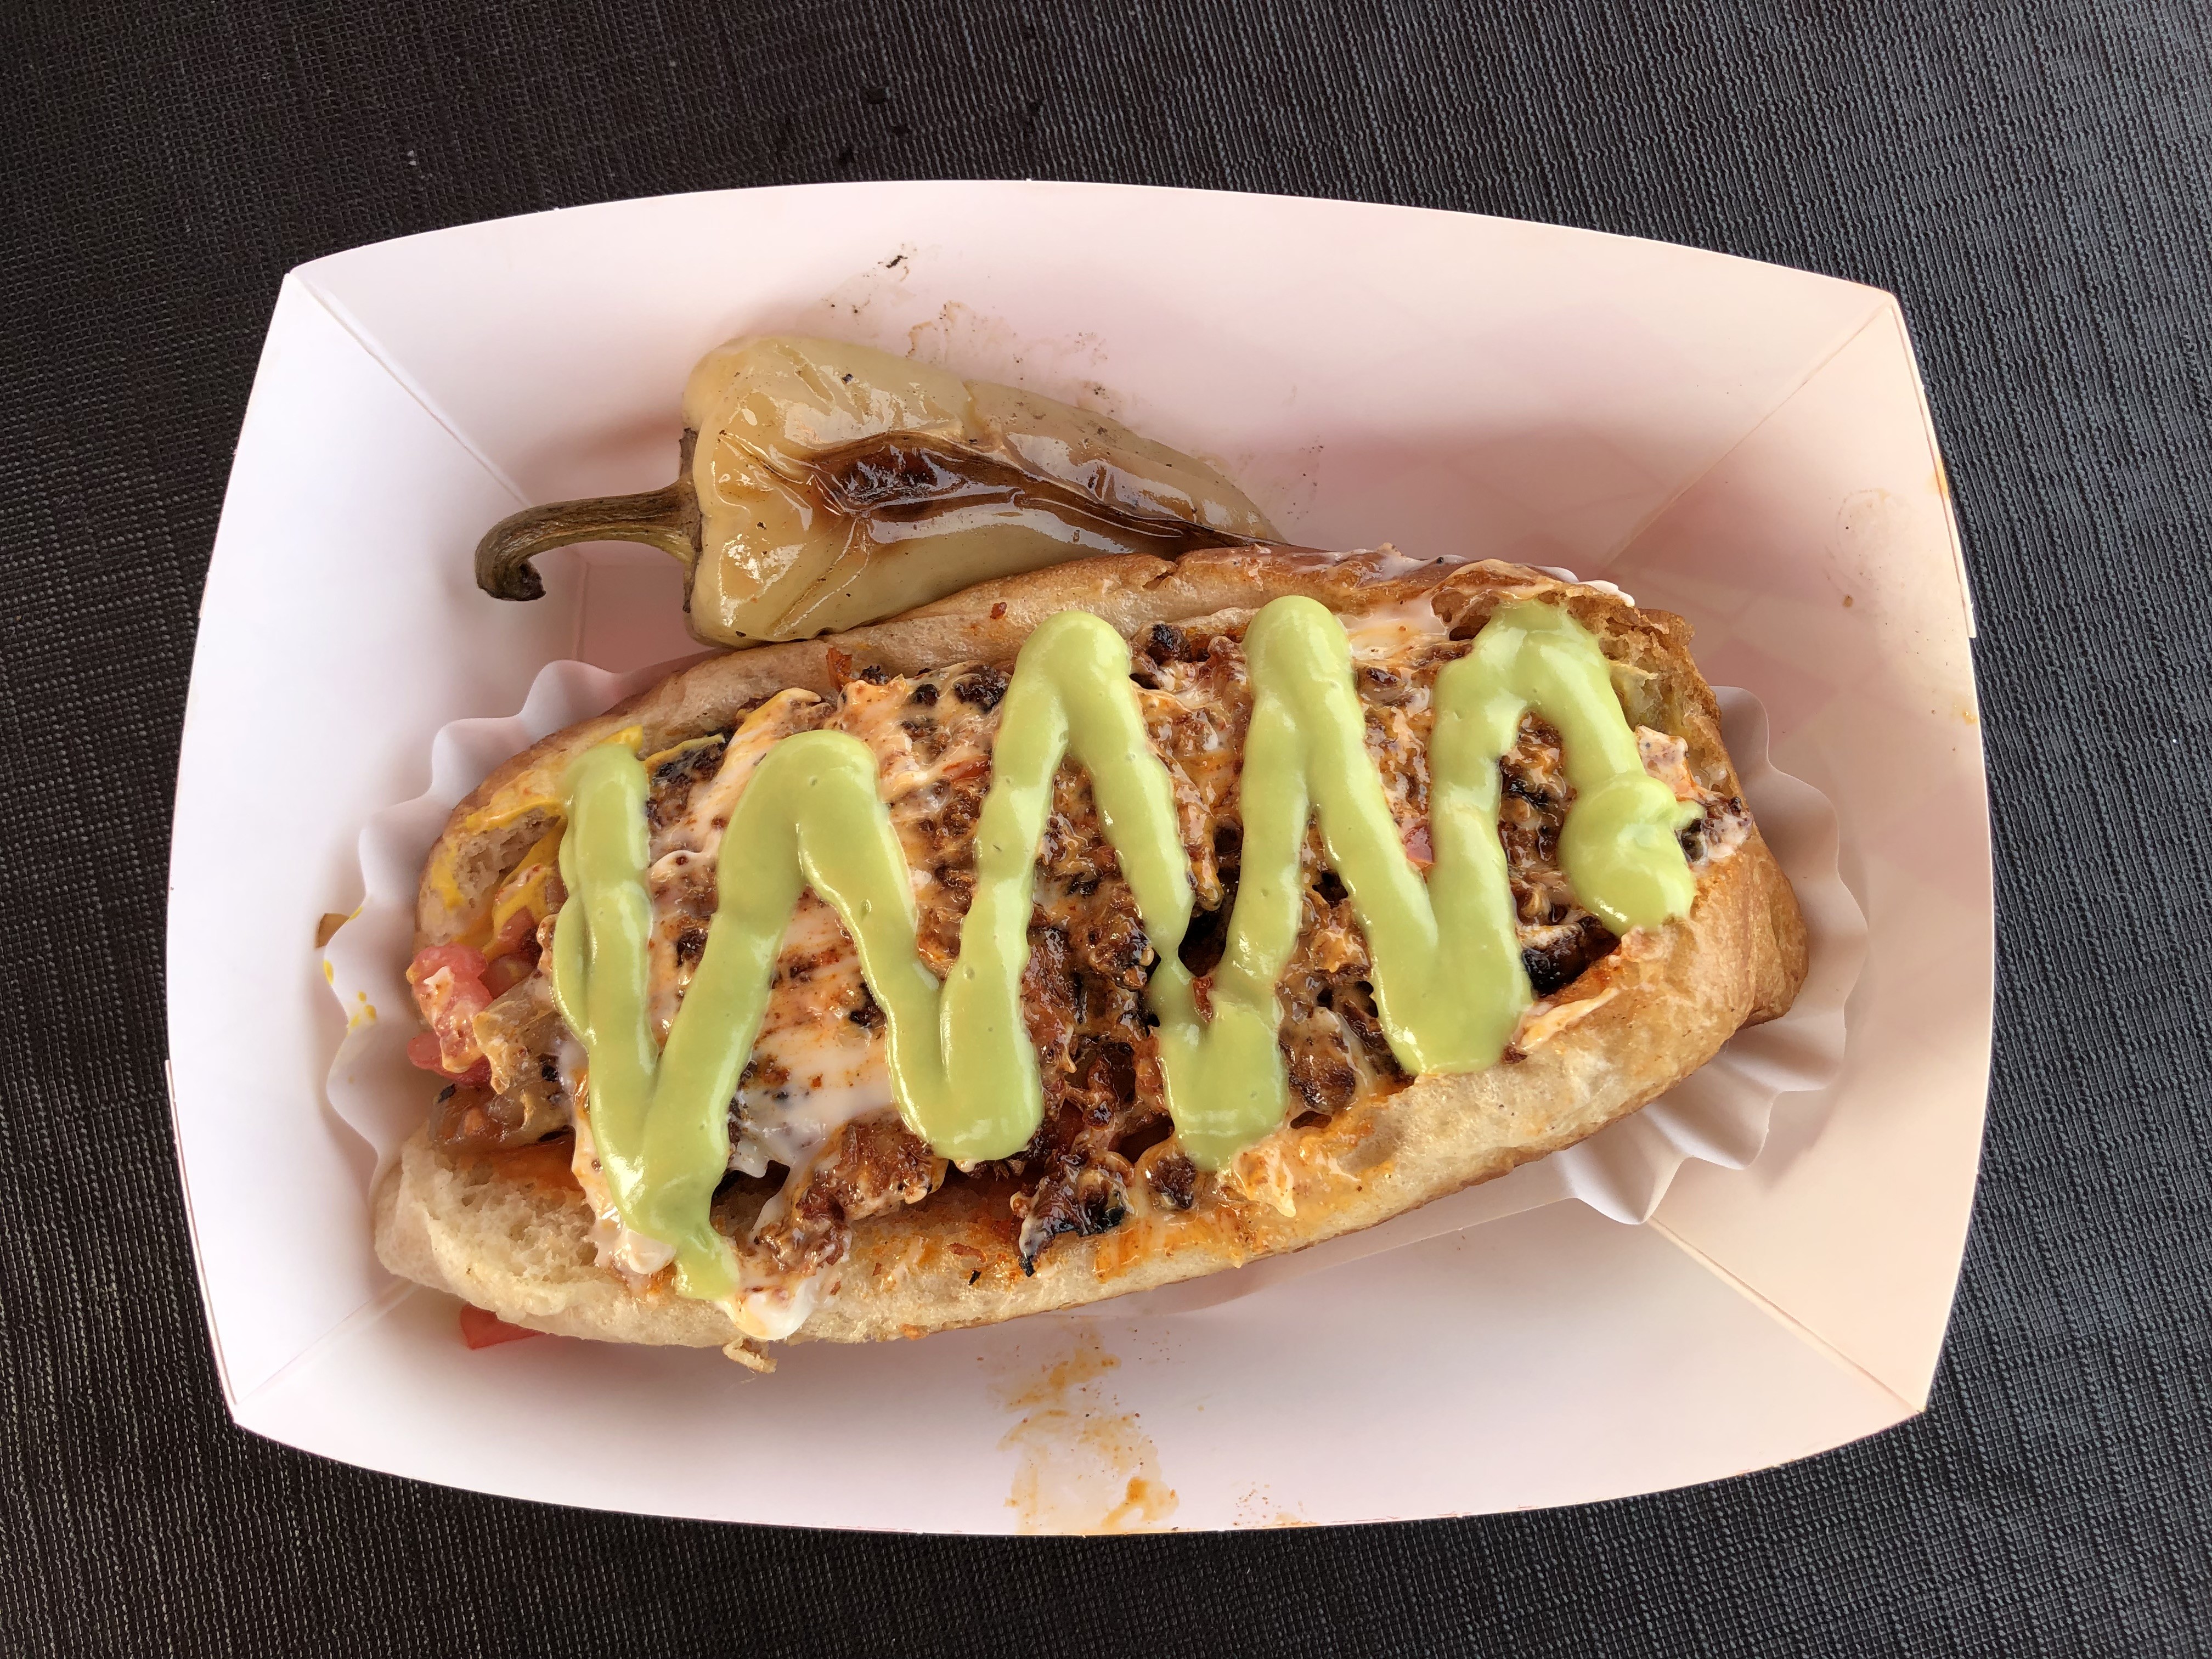 Sonoran Hot Dog- Estilo Sonora